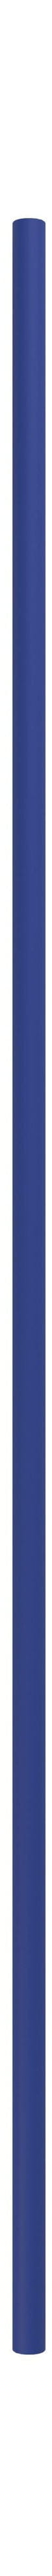 Moebe Système de étagères / étagères murales jambe 115 cm, bleu profond